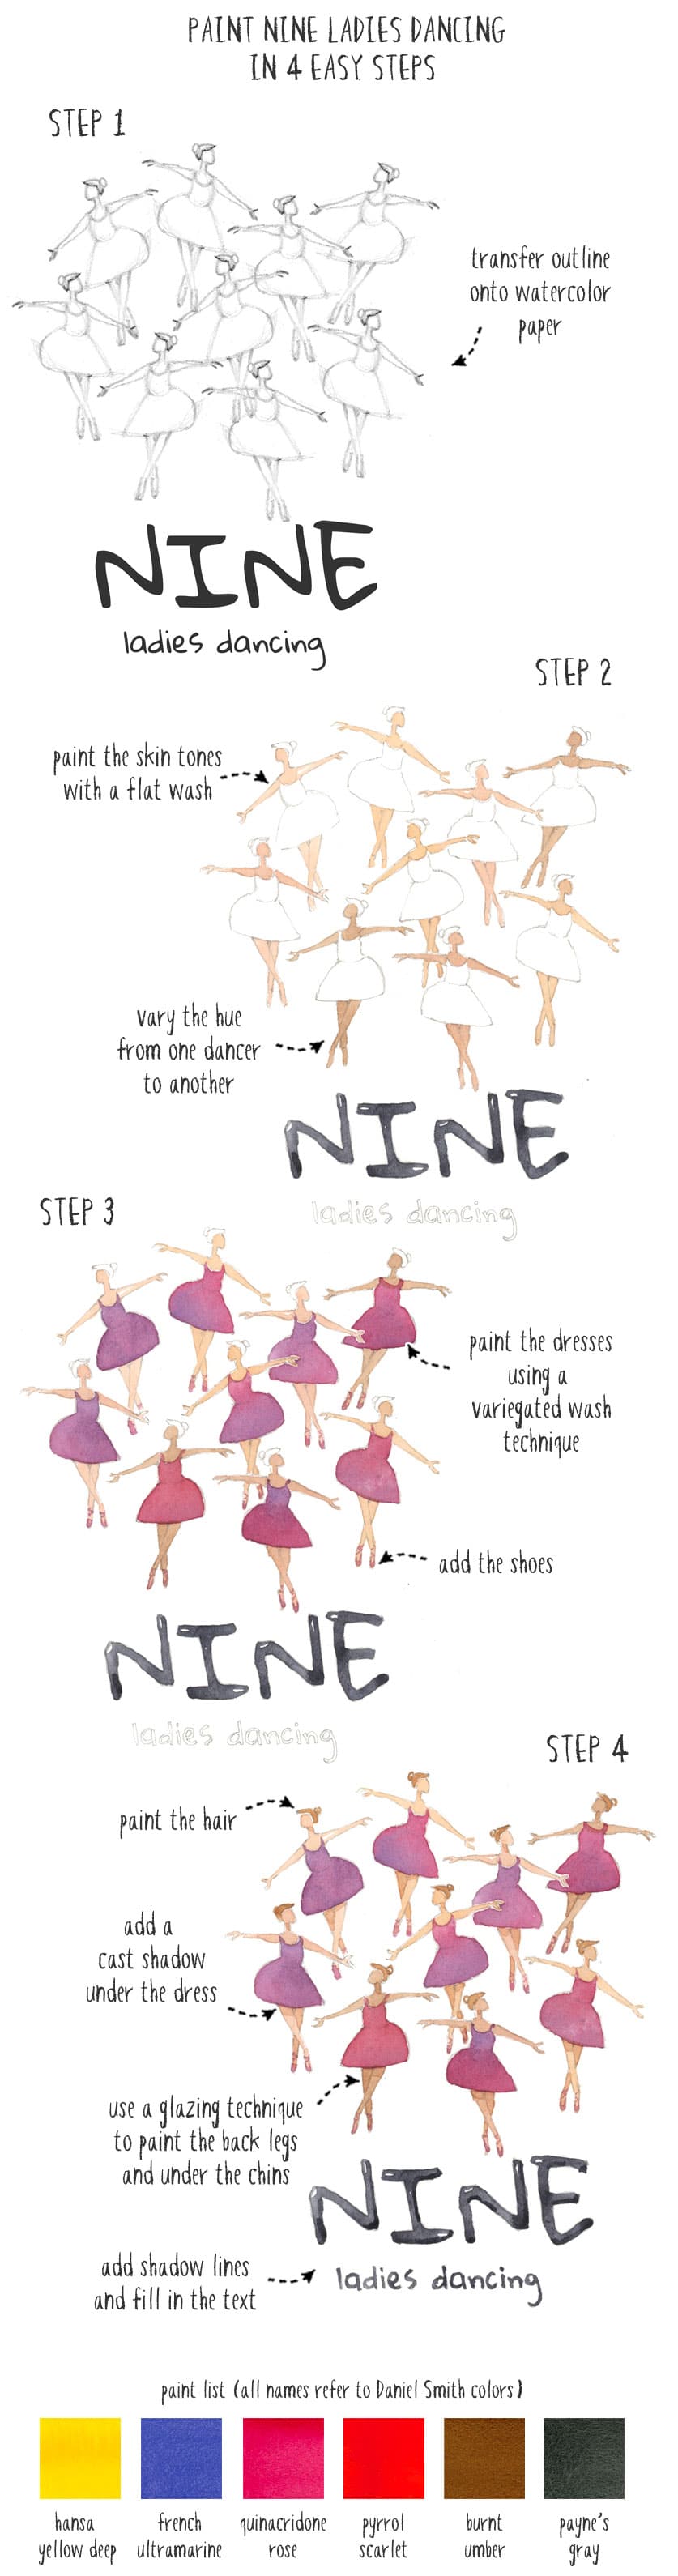 nine ladies dancing 4 step painting process